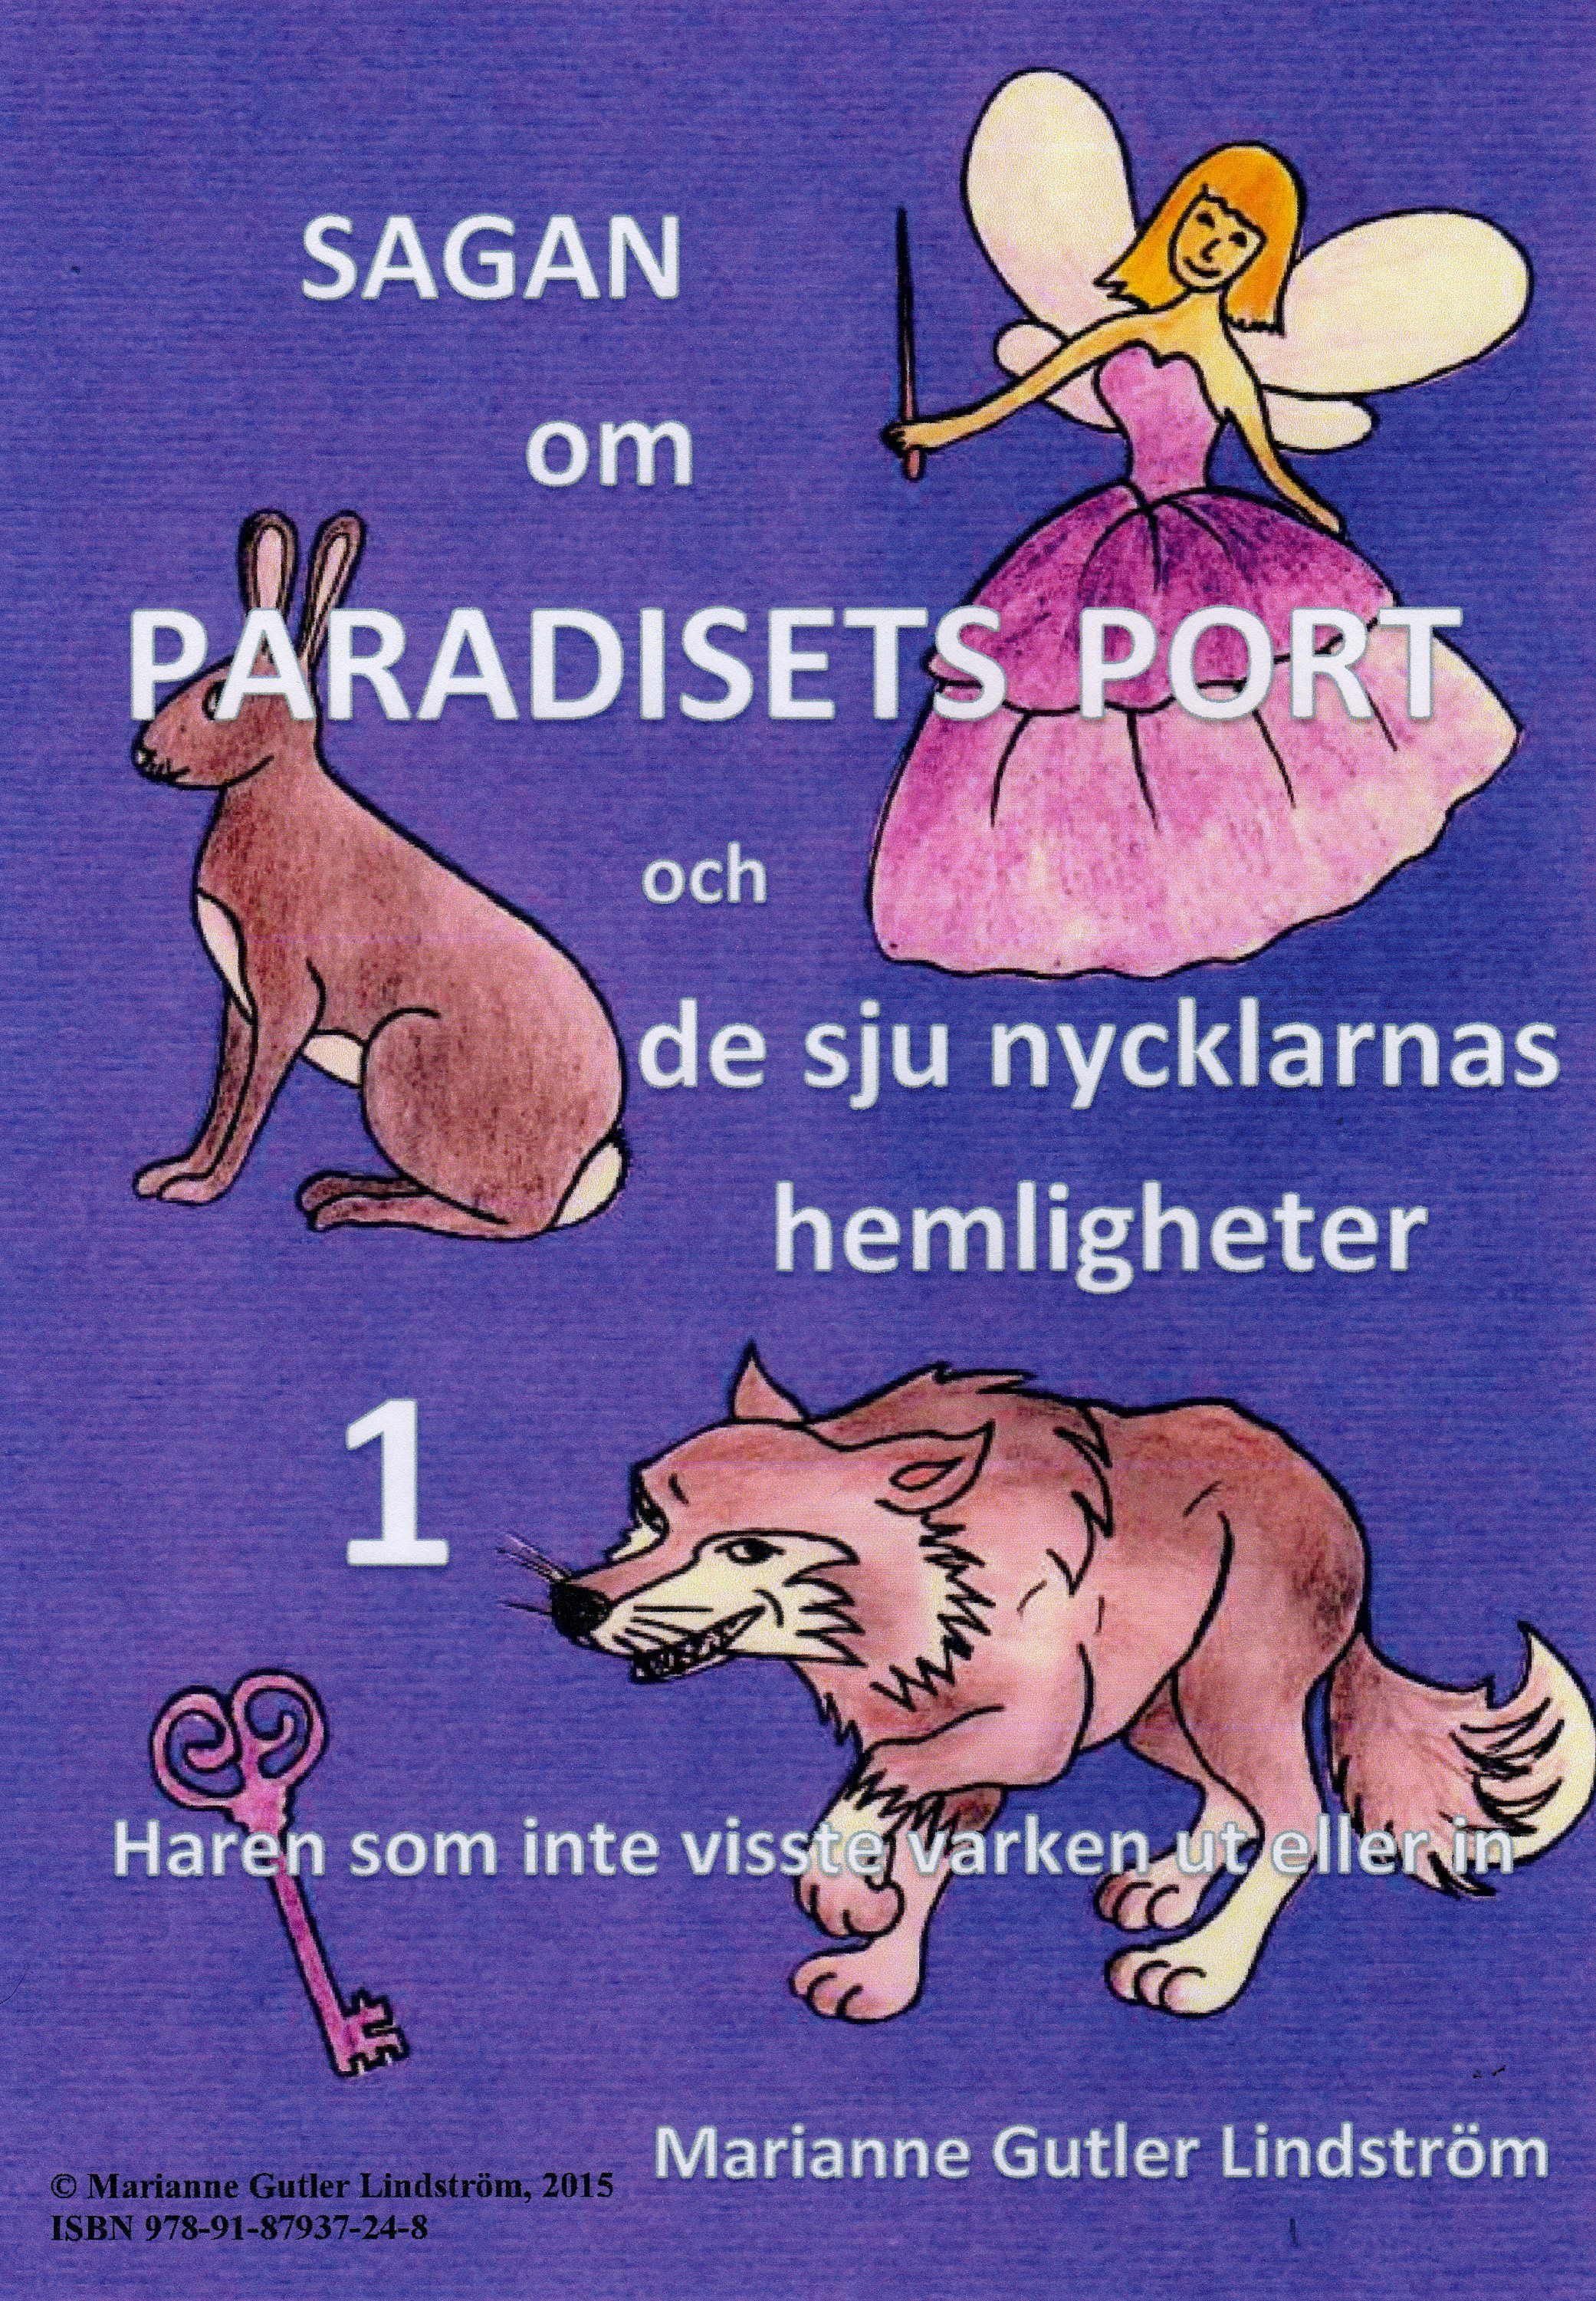 Sagan om Paradisets port 1 Haren som inte visste varken ut eller in, e-bok av Marianne Gutler Lindström